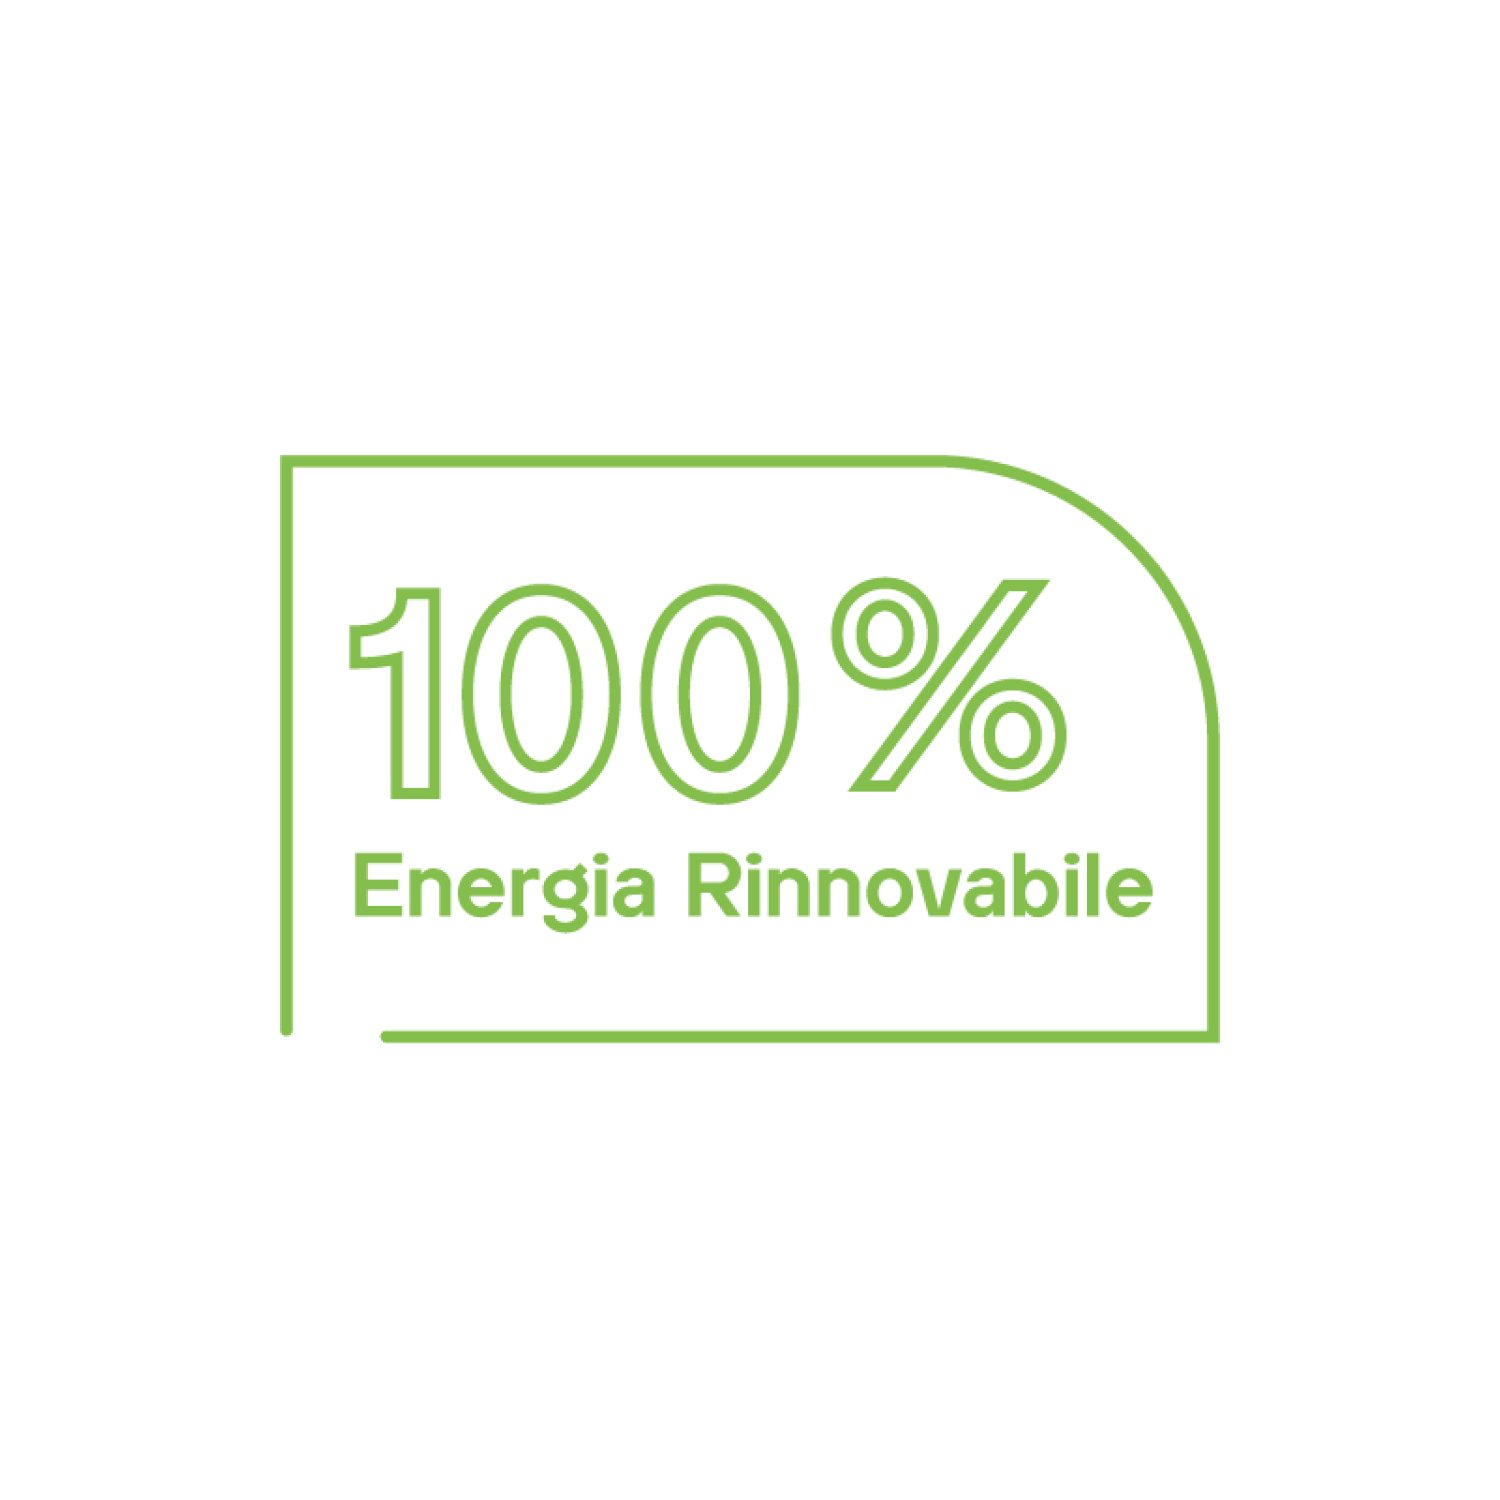 100% ENERGIA.jpg (Copia) (Copia) (Copia)